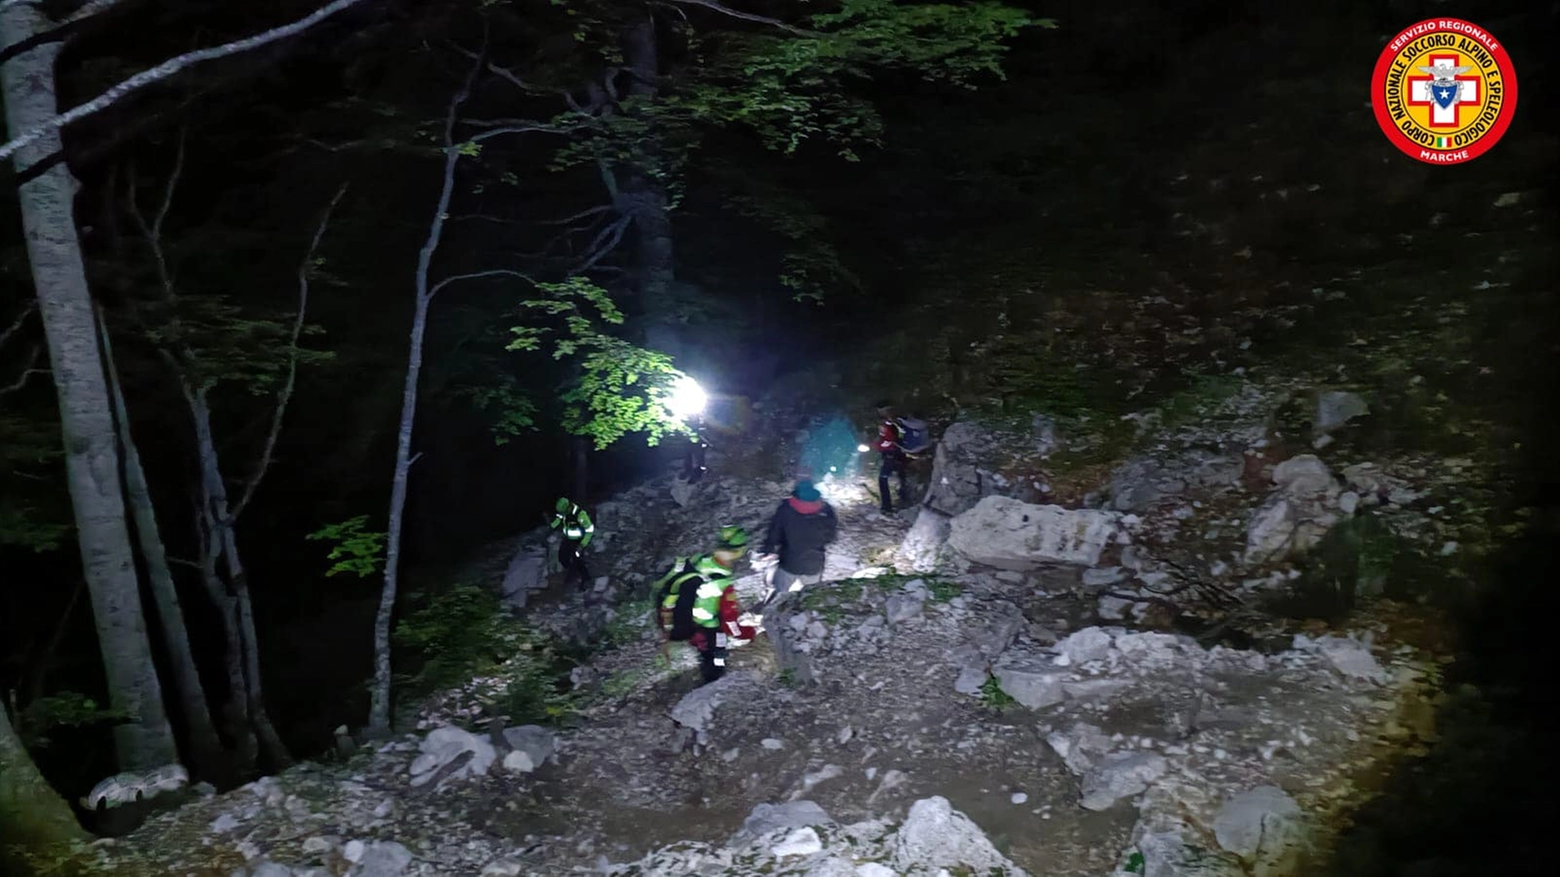 Il soccorso alpino in azione nella notte nelle Marche